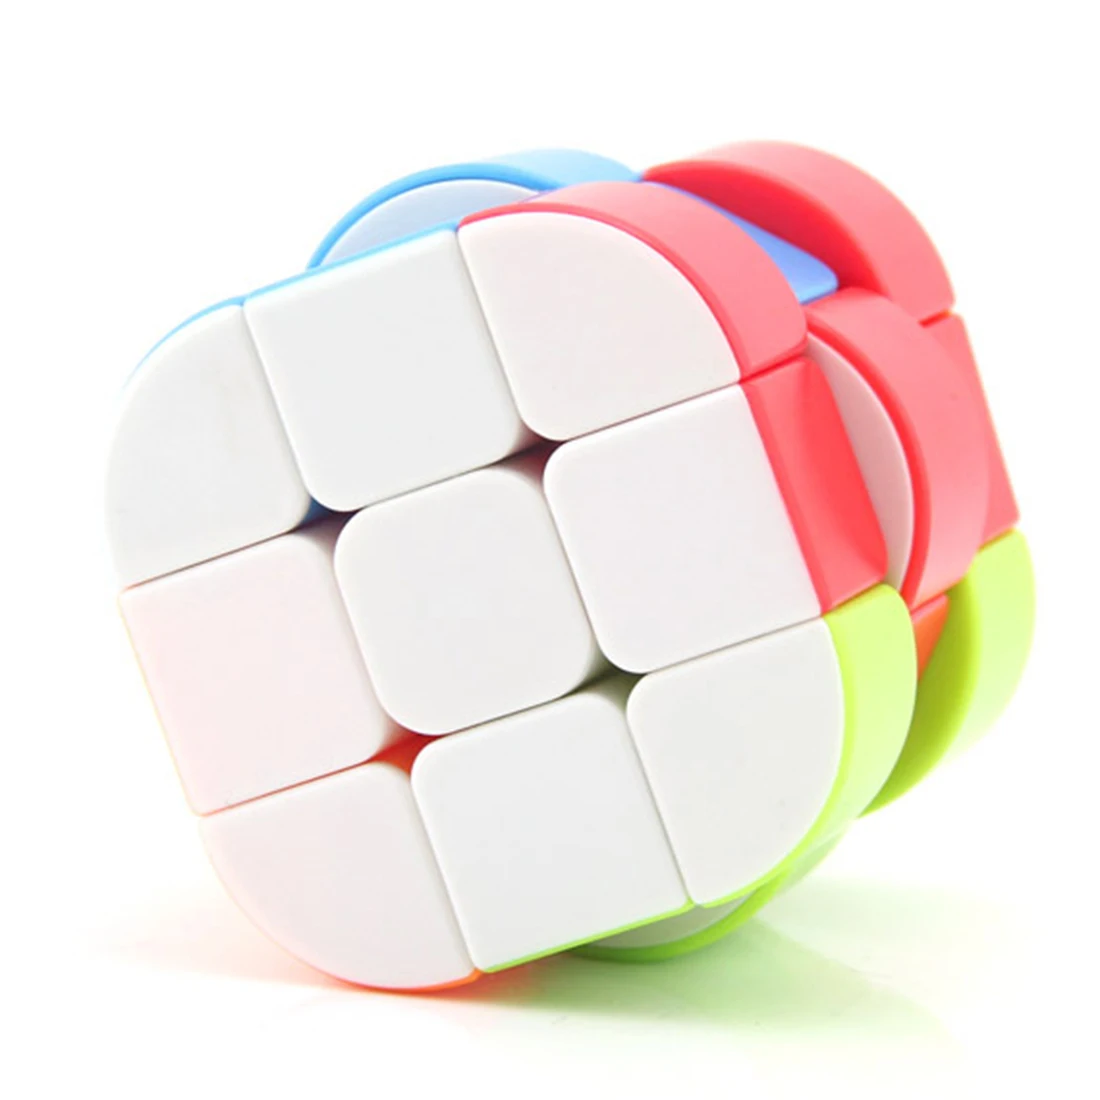 Новый Fanxin в форме цилиндра или Куба Невидимый волшебный куб скорость Твист Головоломка Развивающие игрушки Cubo Magico игрушки для детей